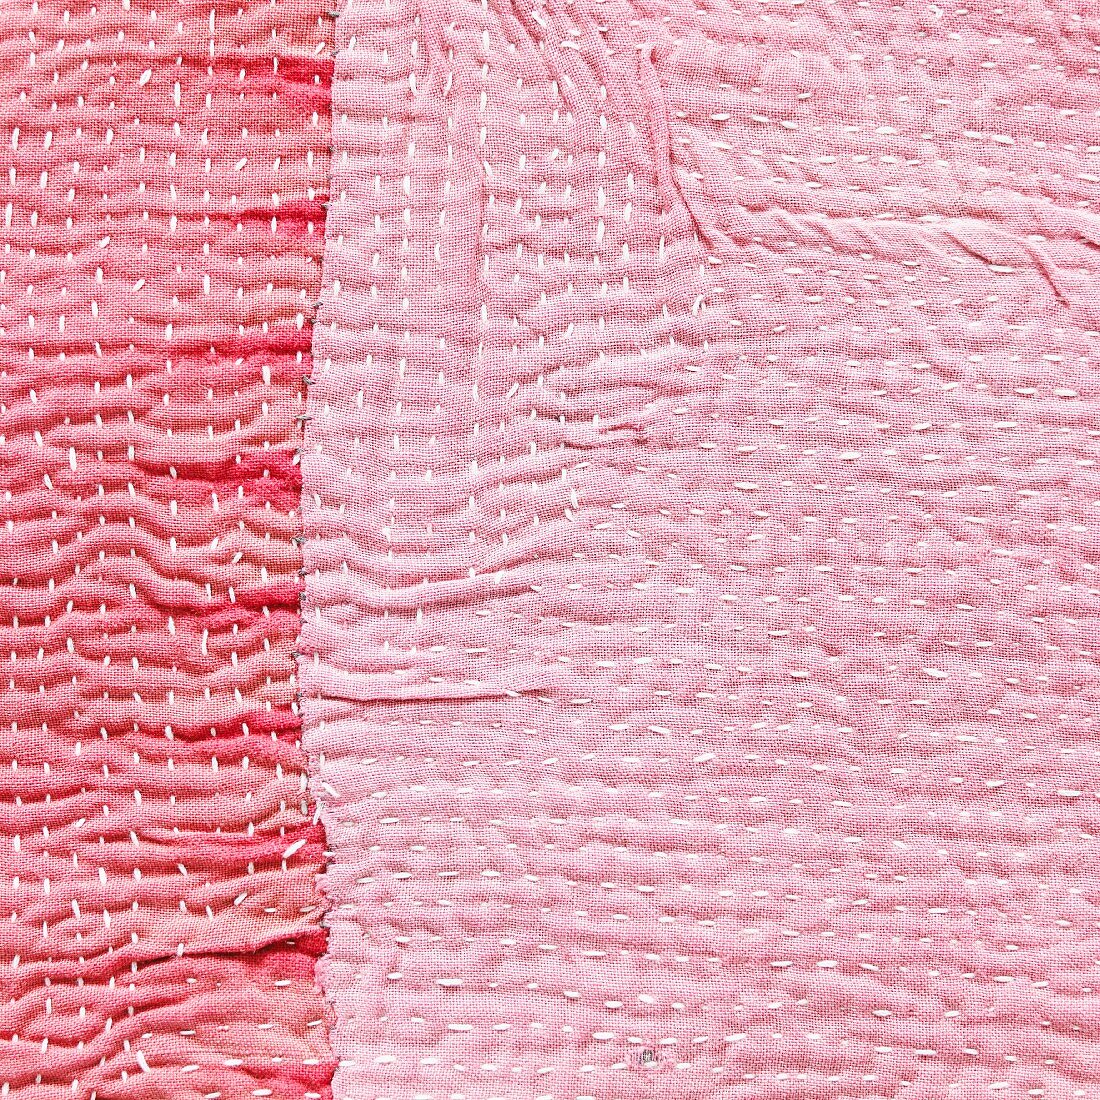 Pinkfarbene Stoffe (bildfüllend)